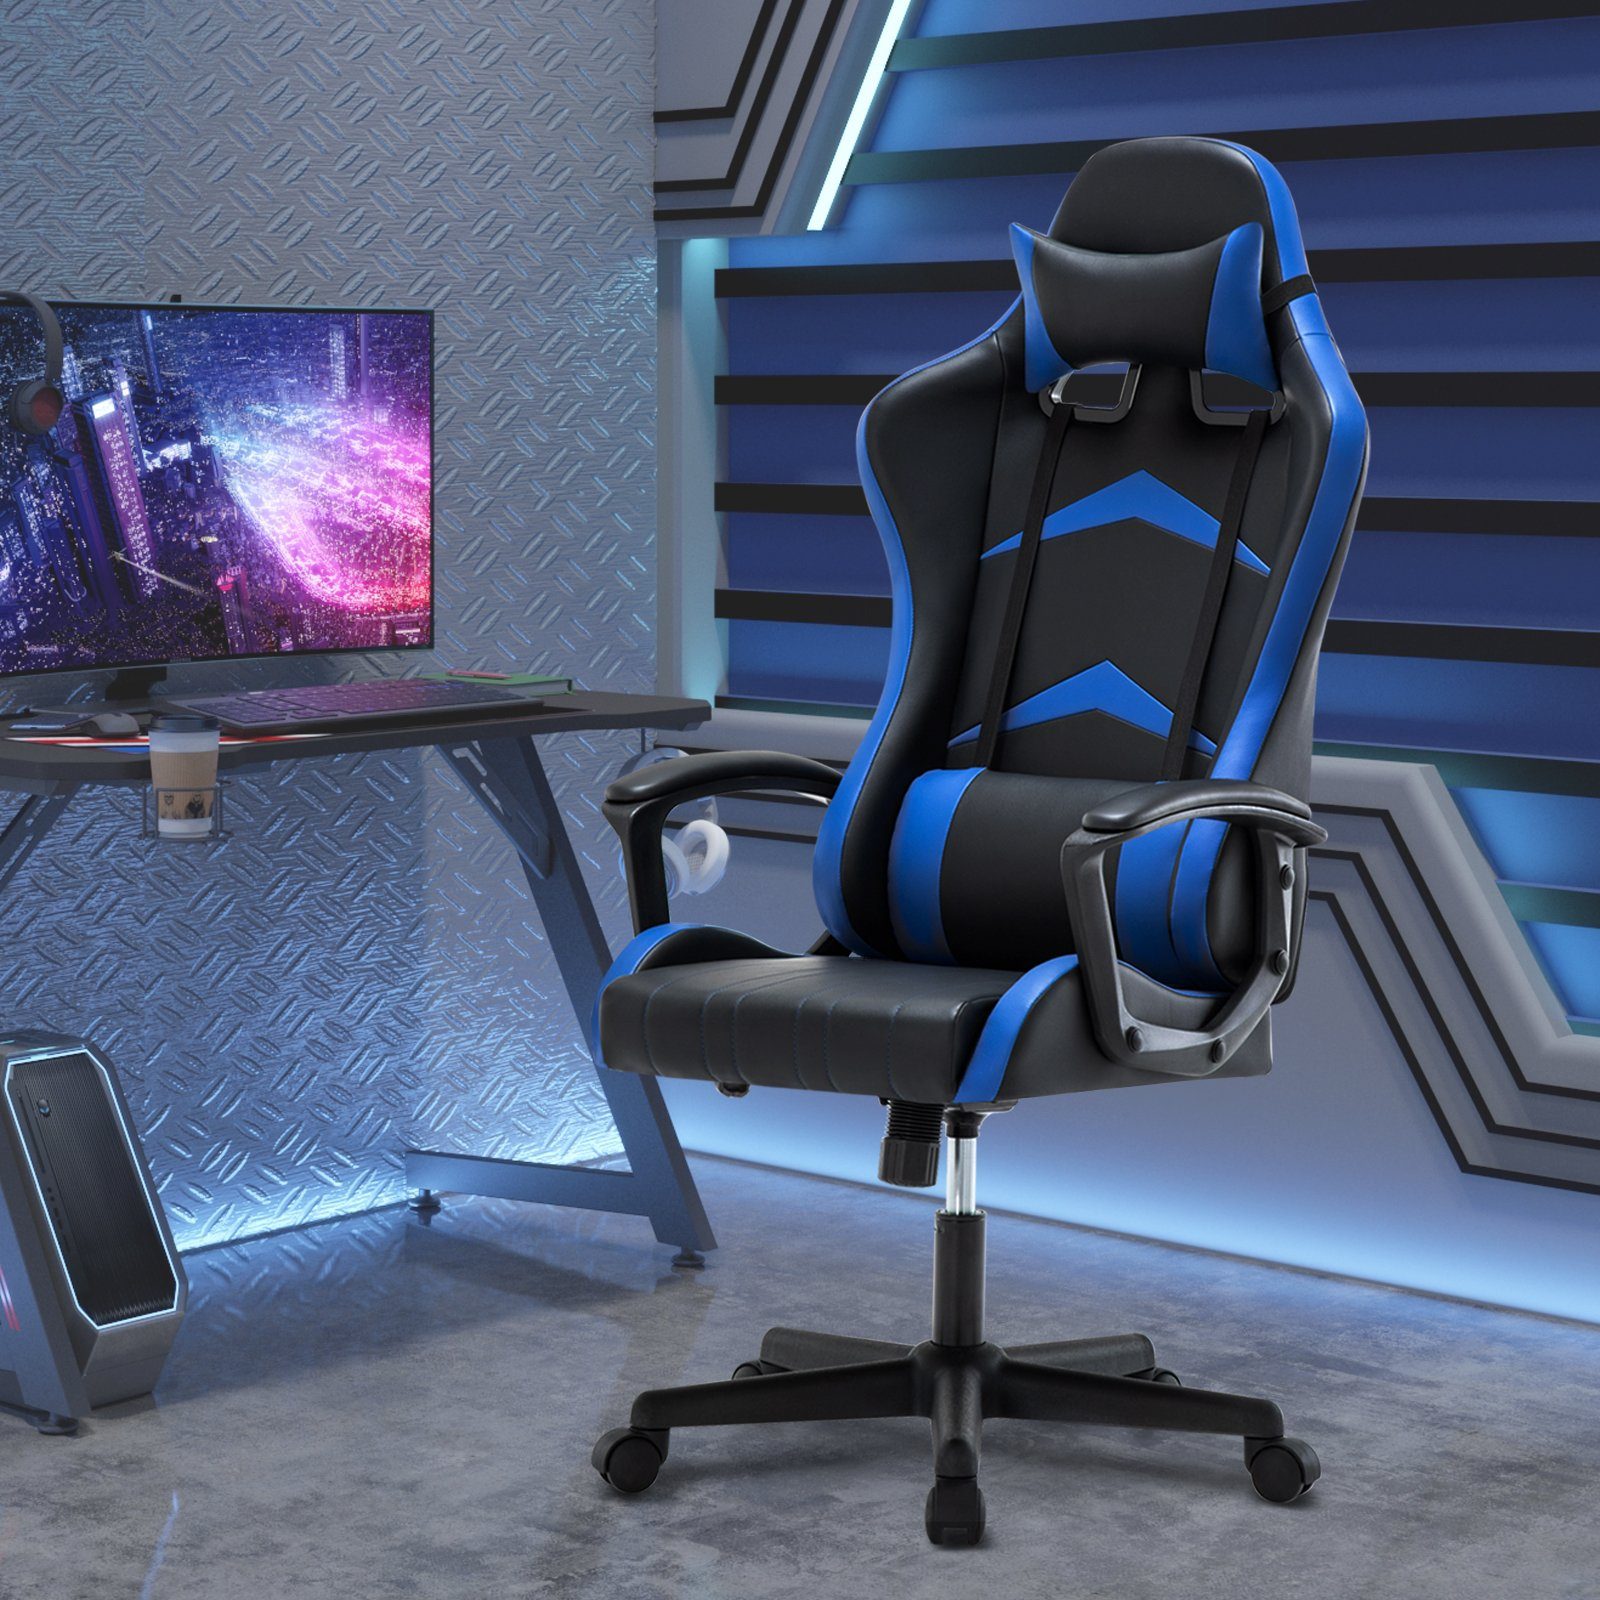 Intimate Schreibtischstuhl Heart WM hoher blau mit Gaming-Stuhl Verstellbarer Rückenlehne Ergonomischer